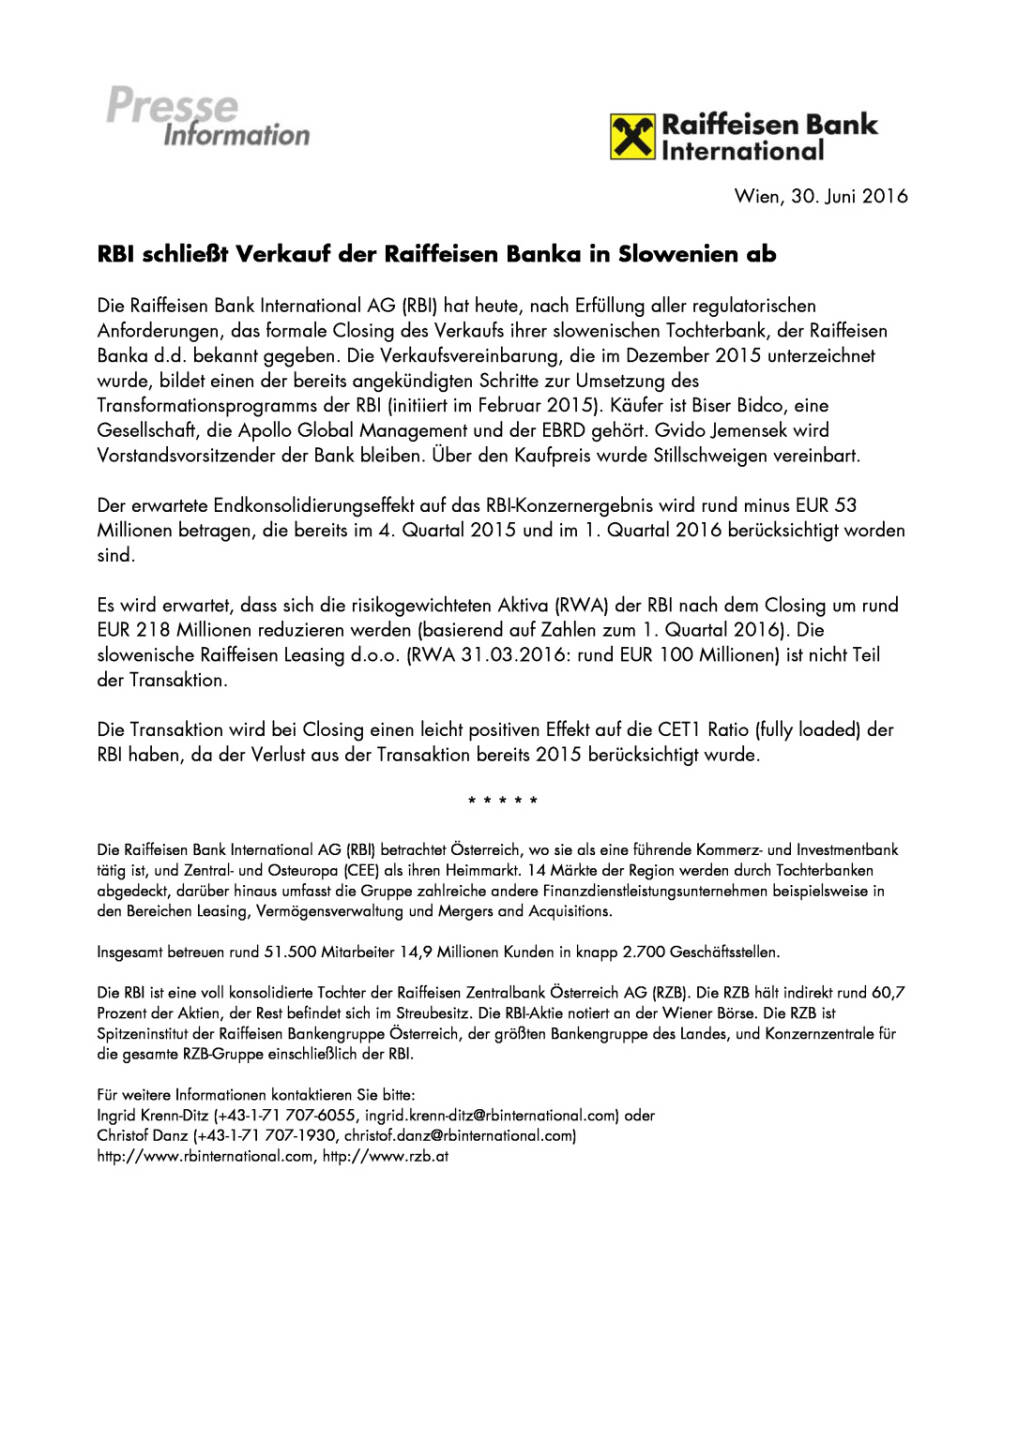 RBI schließt Verkauf der Raiffeisen Banka in Slowenien ab, Seite 1/1, komplettes Dokument unter http://boerse-social.com/static/uploads/file_1311_rbi_schliesst_verkauf_der_raiffeisen_banka_in_slowenien_ab.pdf